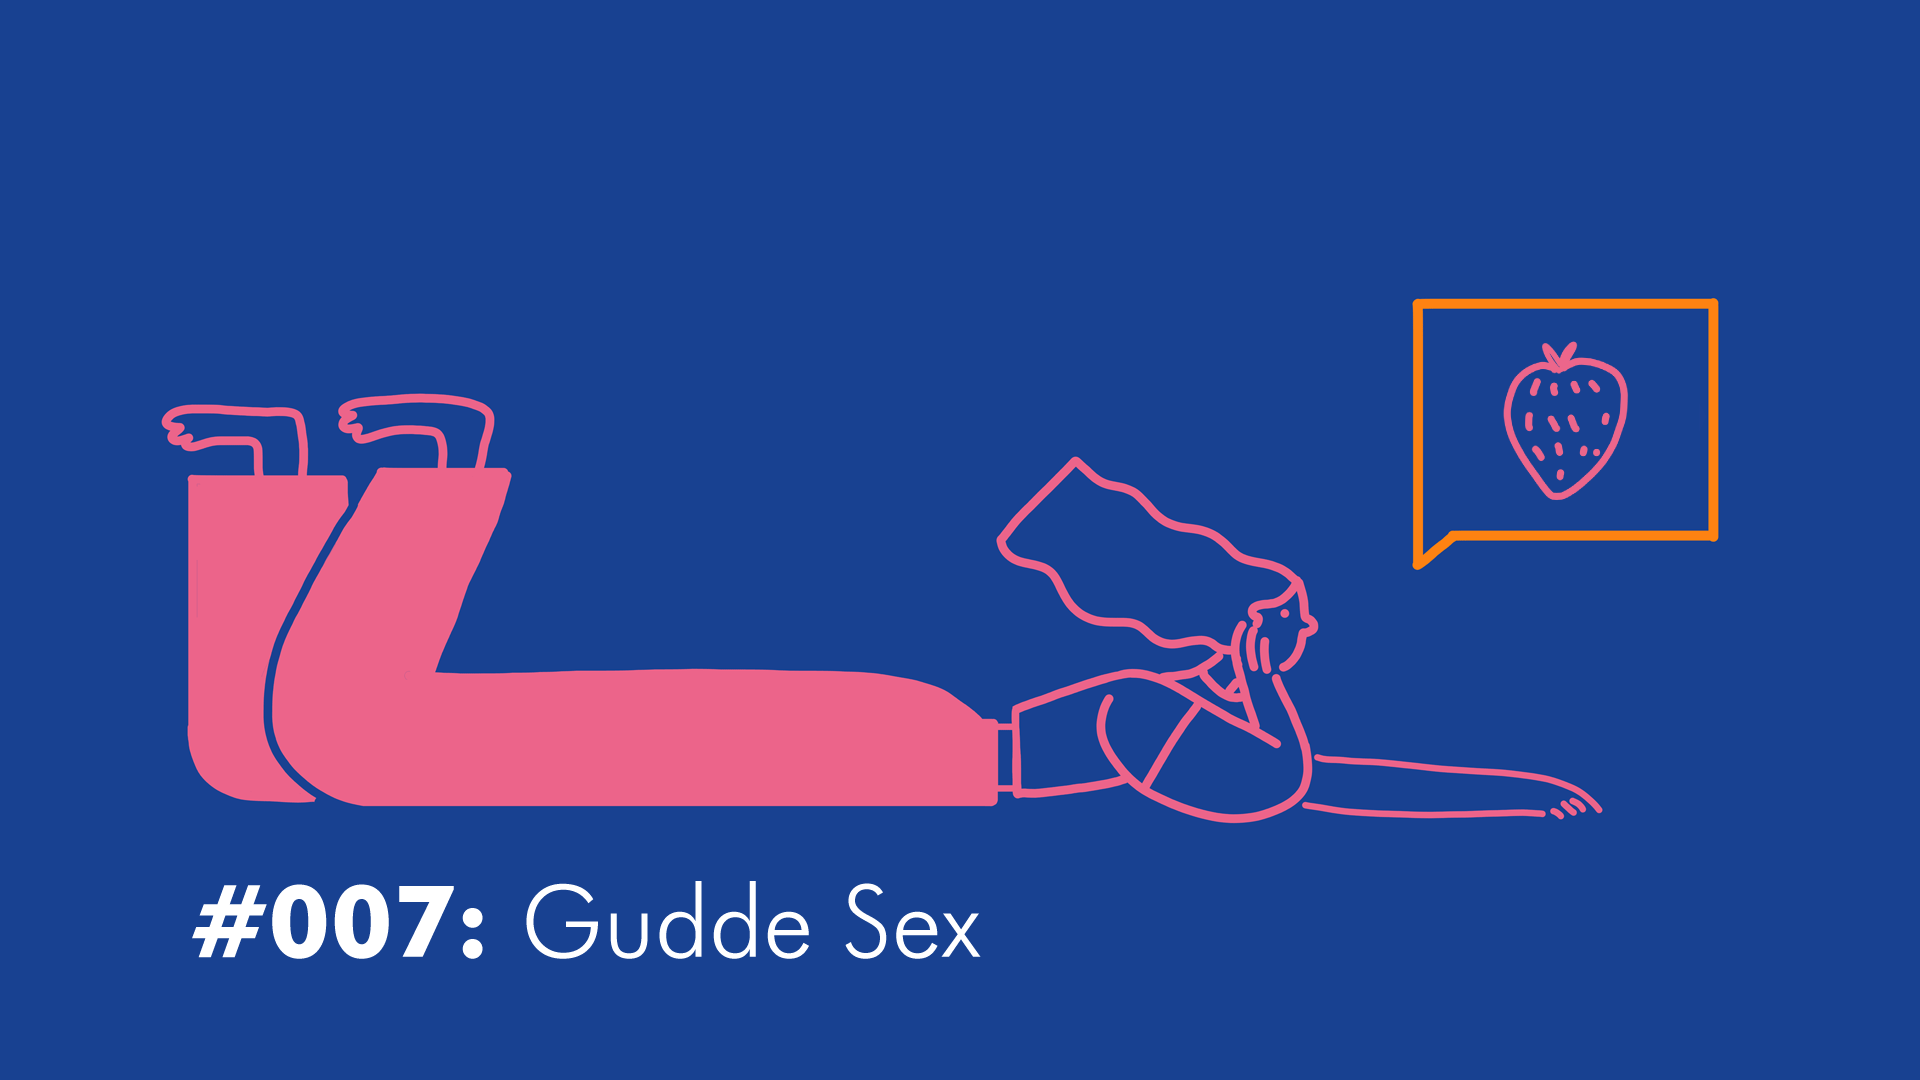 #007 Gudde Sex